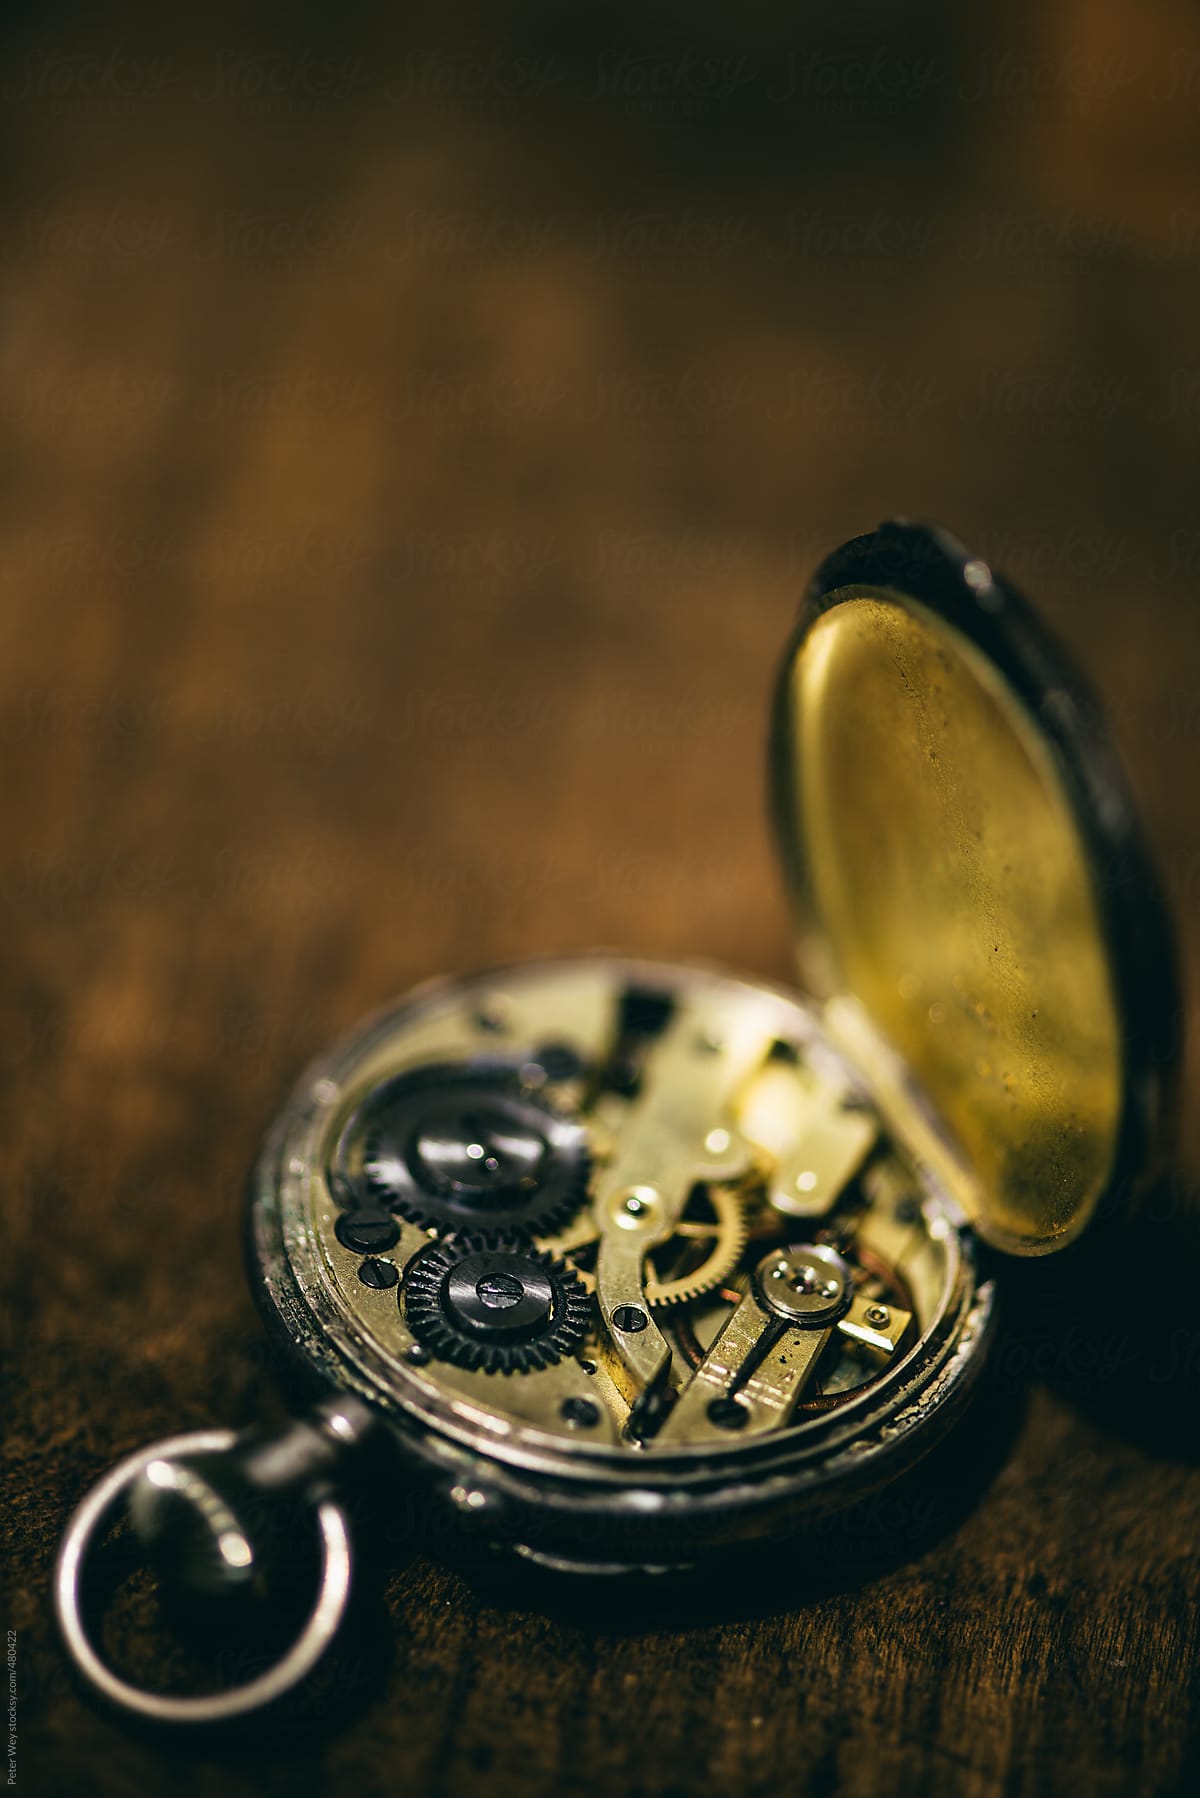 Clockwork of old pocket watch